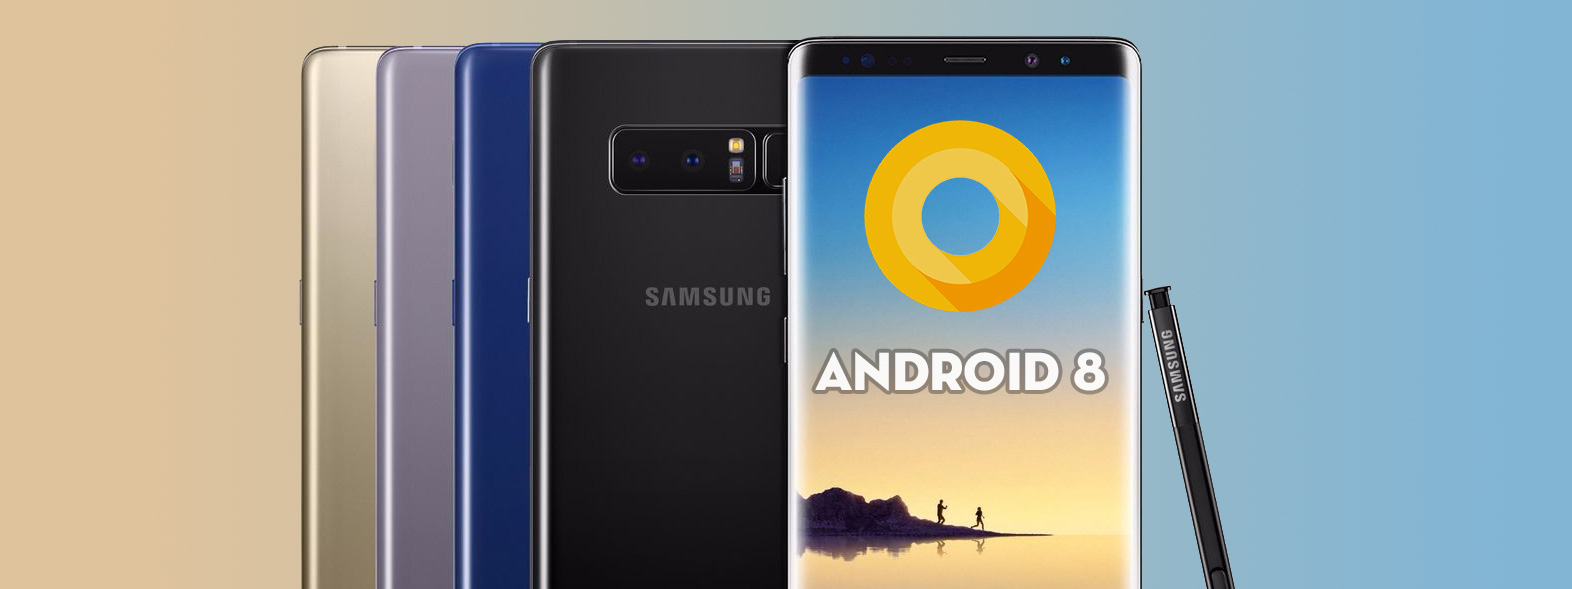 Samsung đã hoàn thiện Android 8.0 cho Galaxy Note 8 bản Snapdragon, Exynos vẫn chưa có thông tin